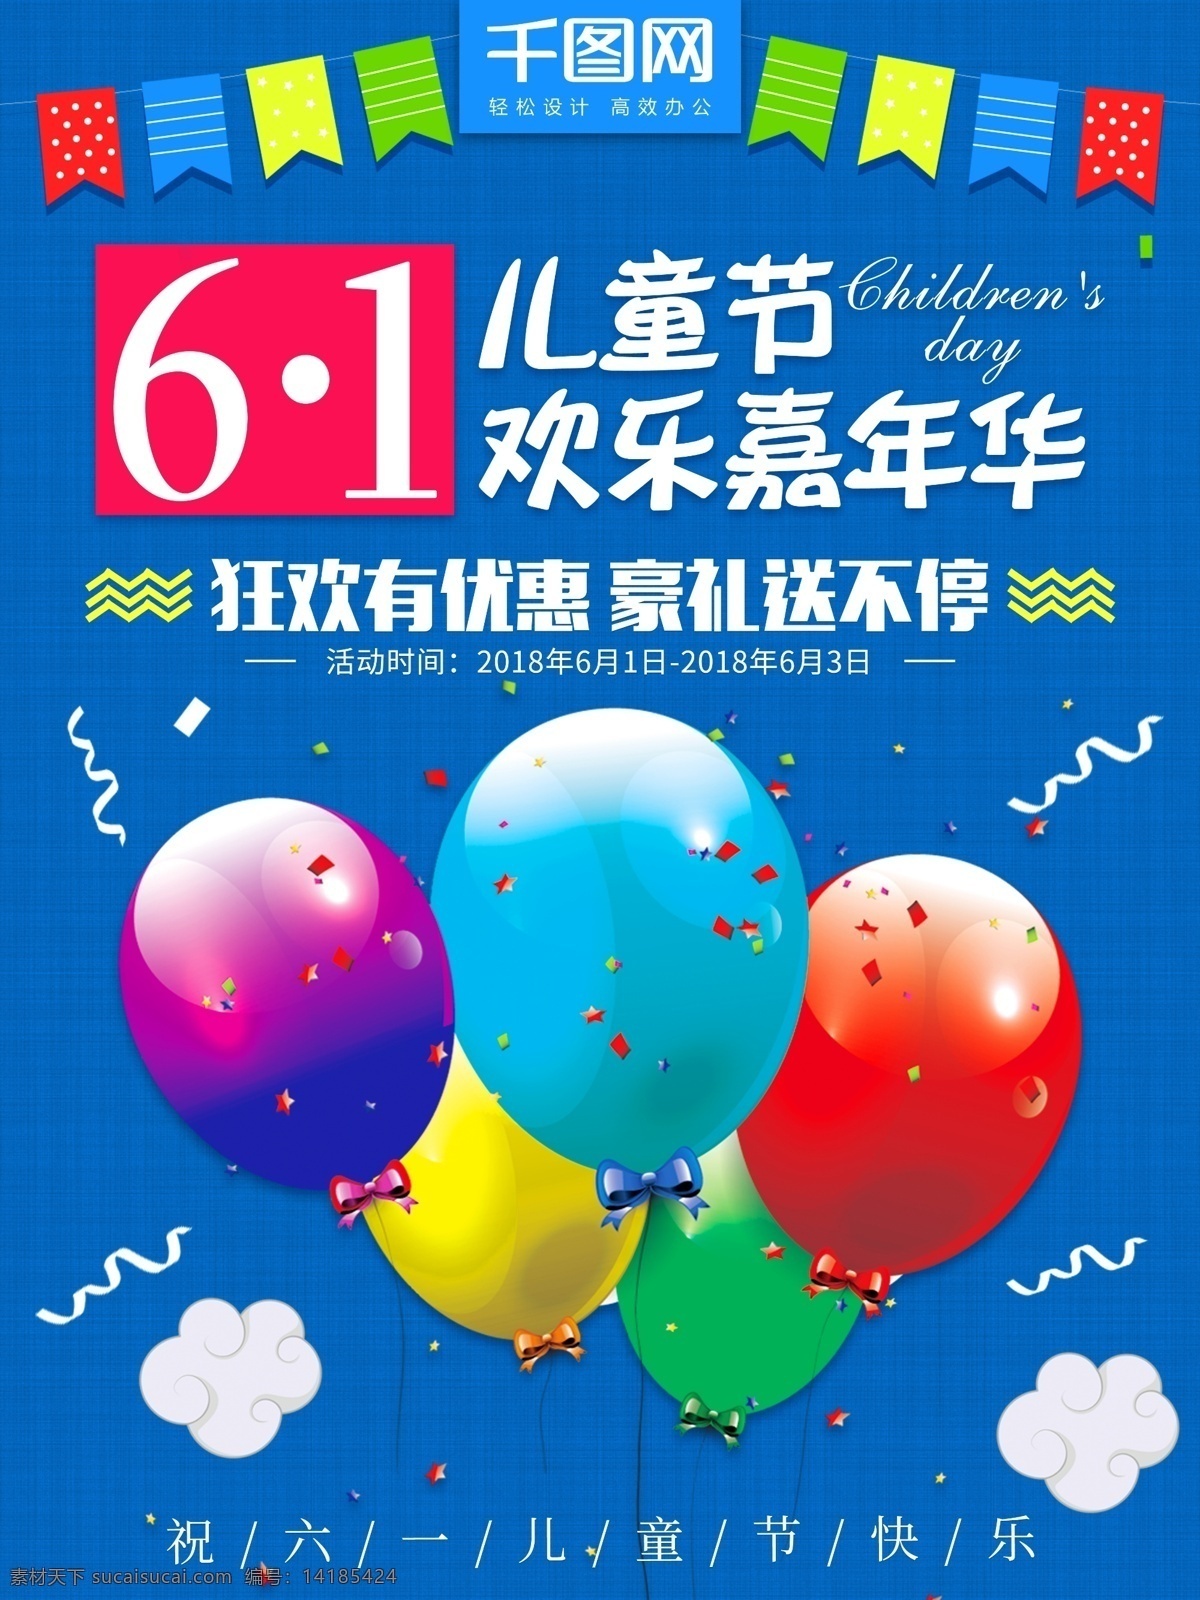 六一儿童节 欢乐 嘉年华 蓝色 小 清新 促销 海报 促销海报 蓝色背景 六一 儿童节 气球 欢乐嘉年华 小清新 61 61儿童节